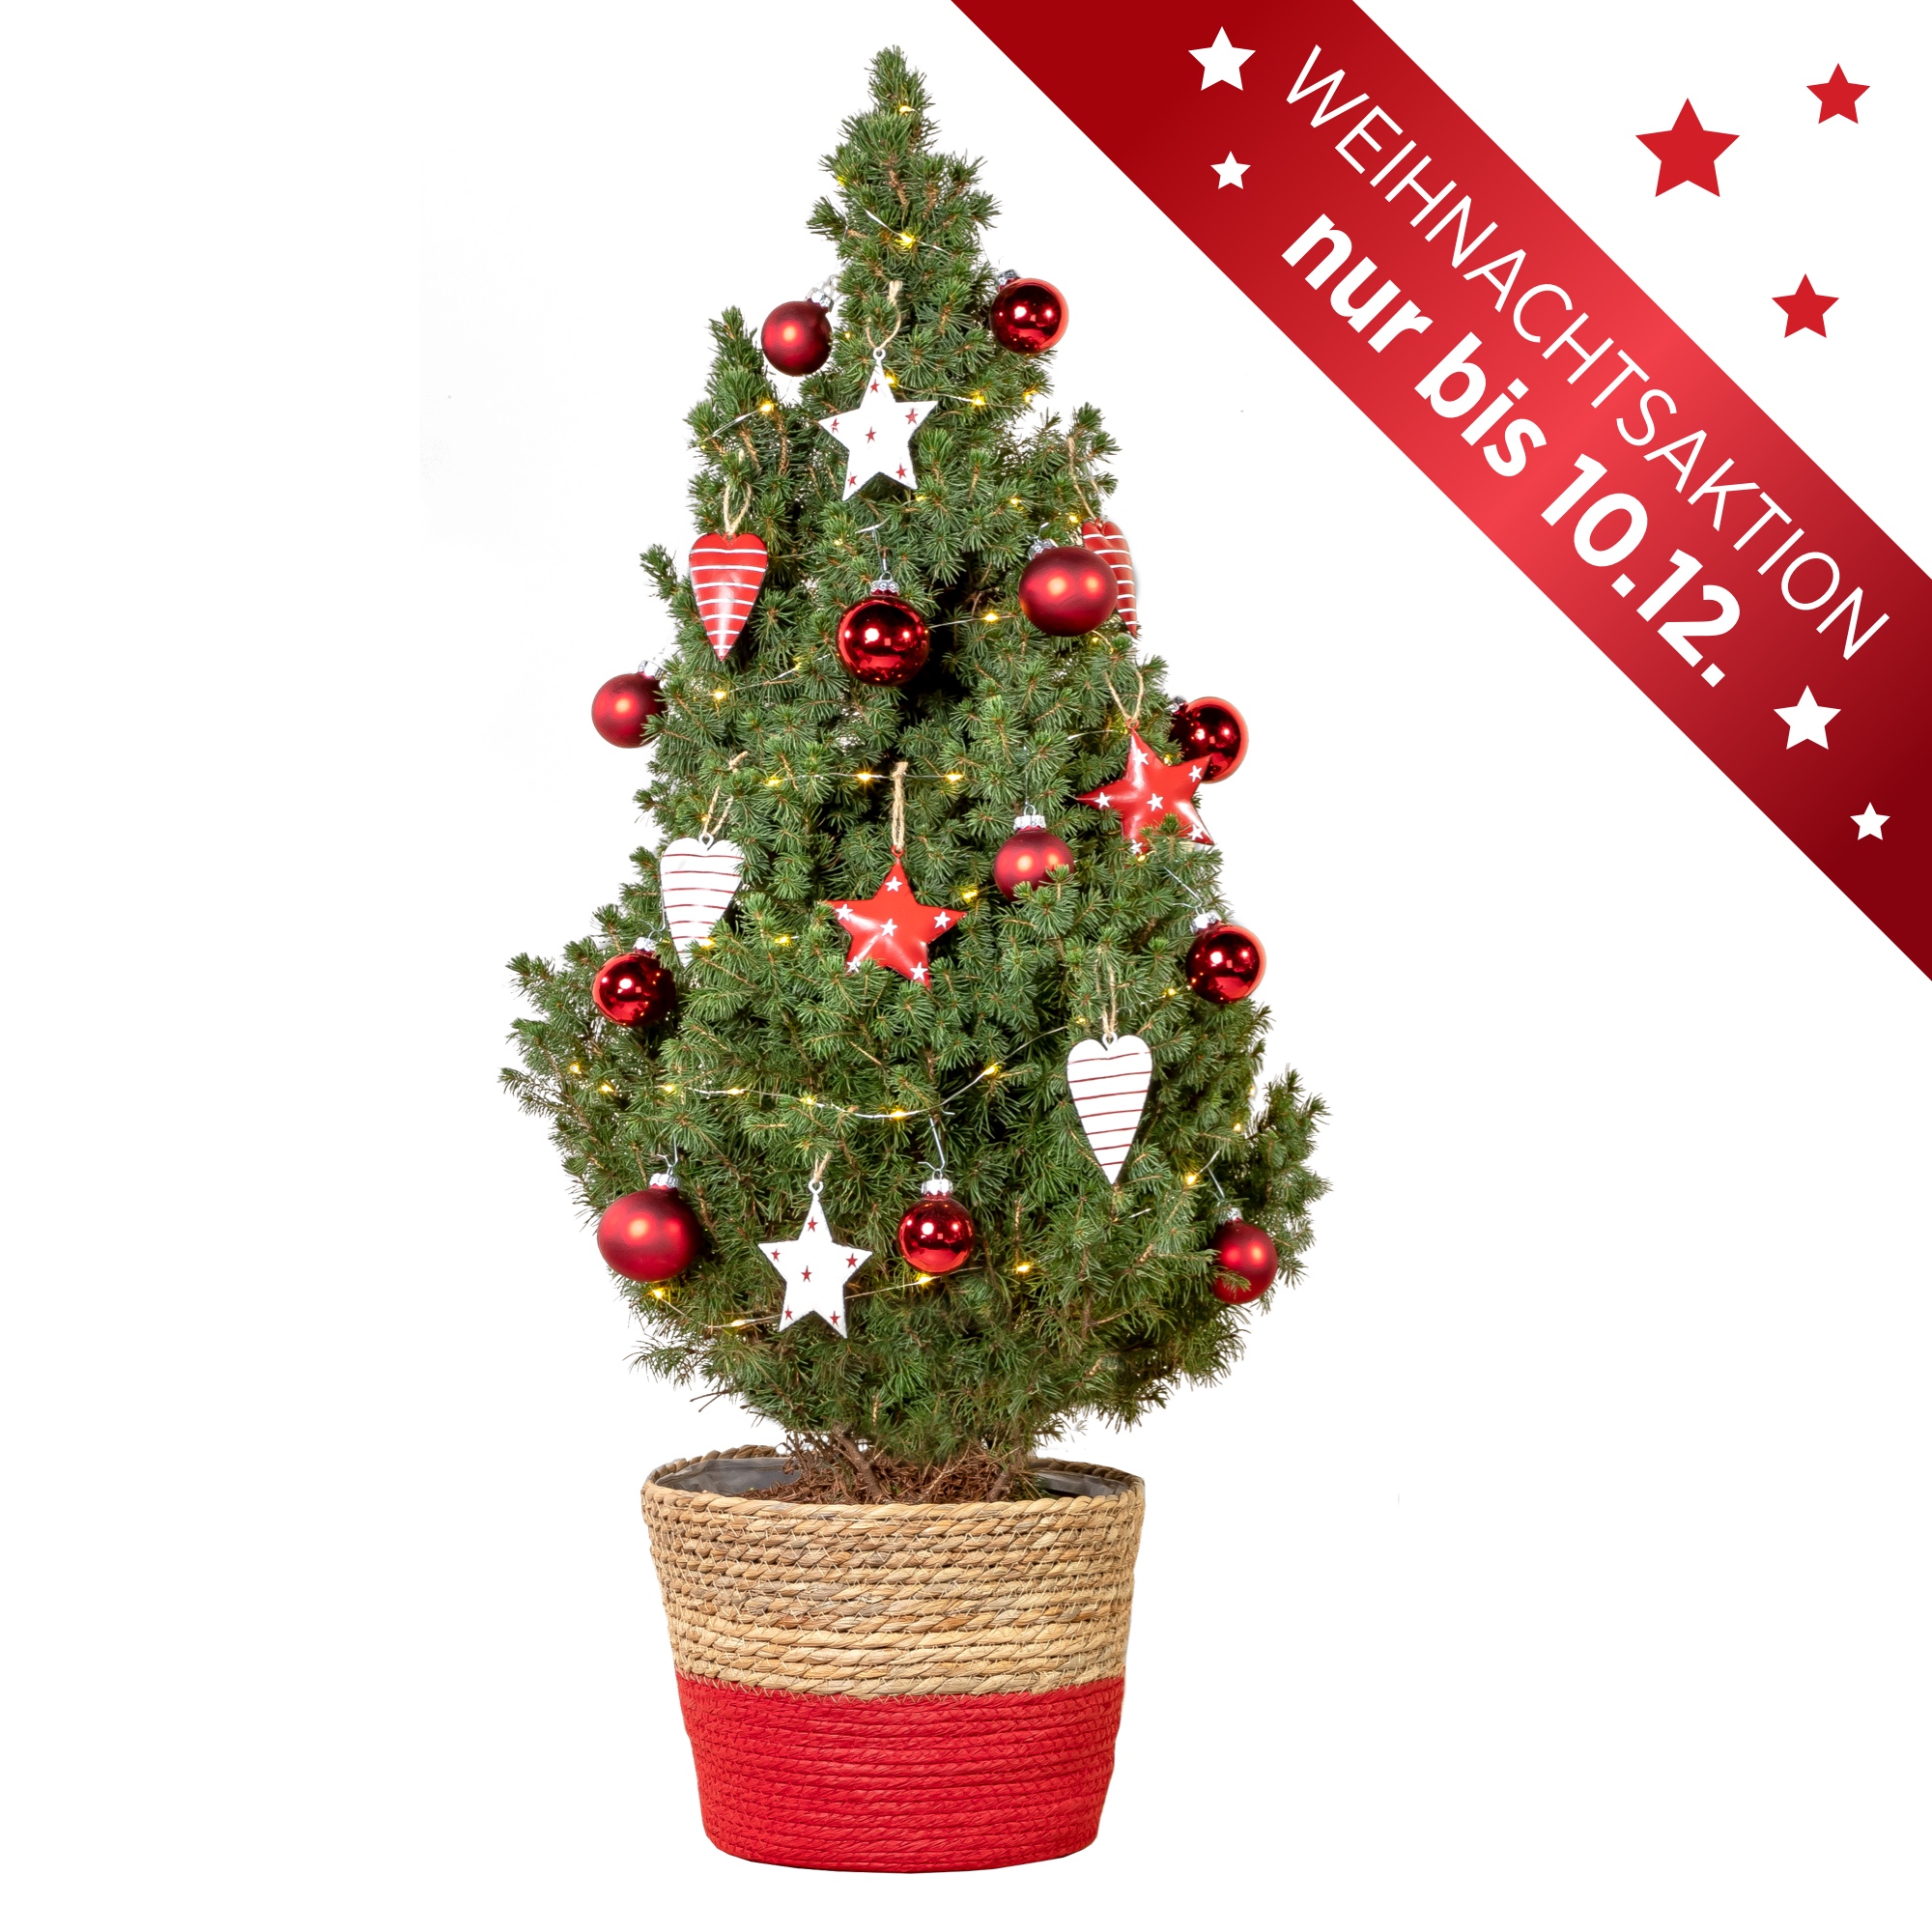 Festtags-Paket Weihnachtsbaum